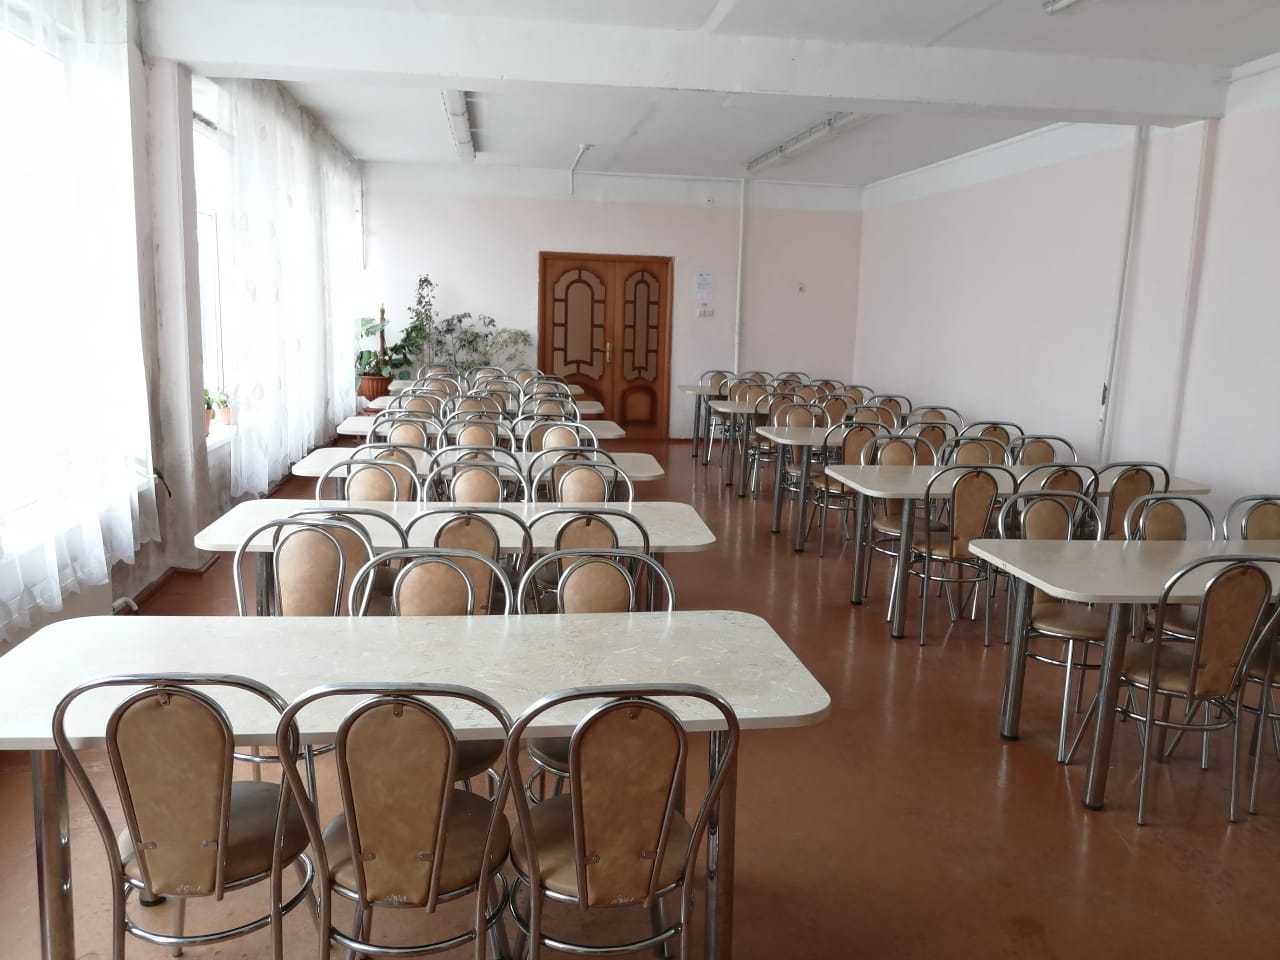 Обеденный зал в школьной столовой